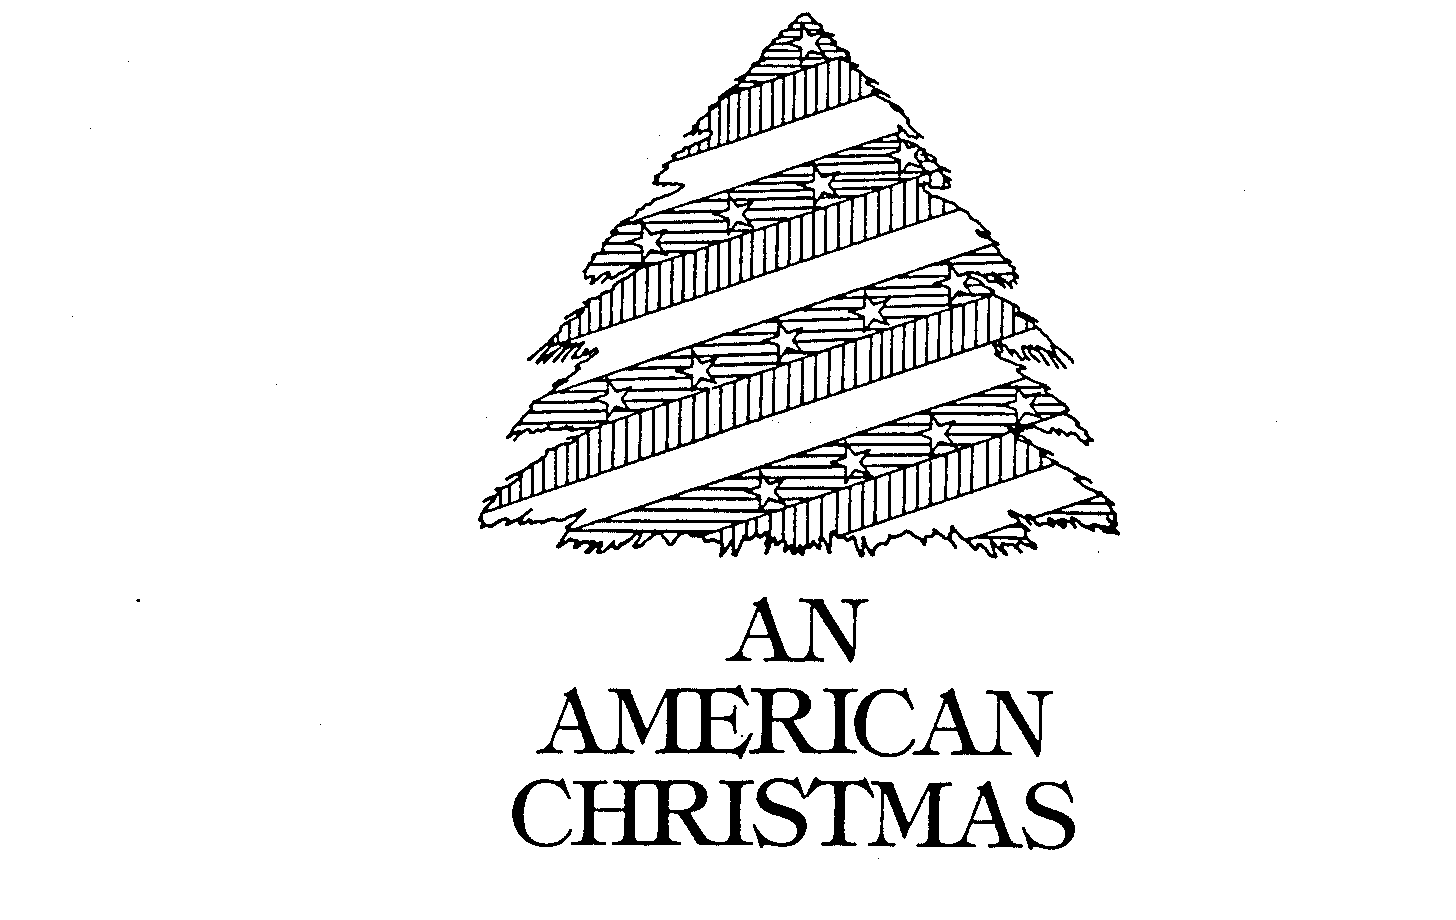  AN AMERICAN CHRISTMAS